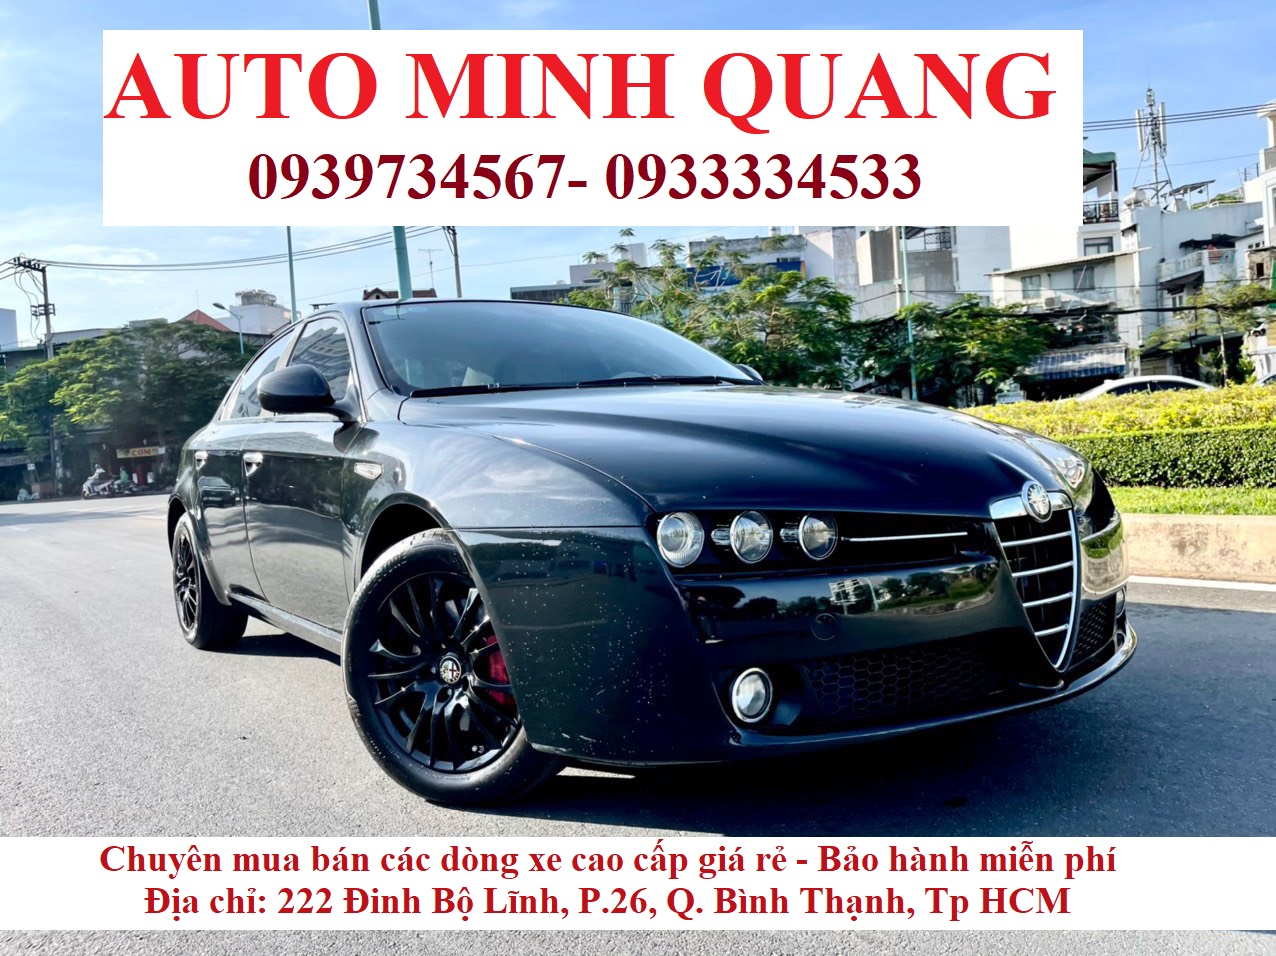 Auto Minh Quang